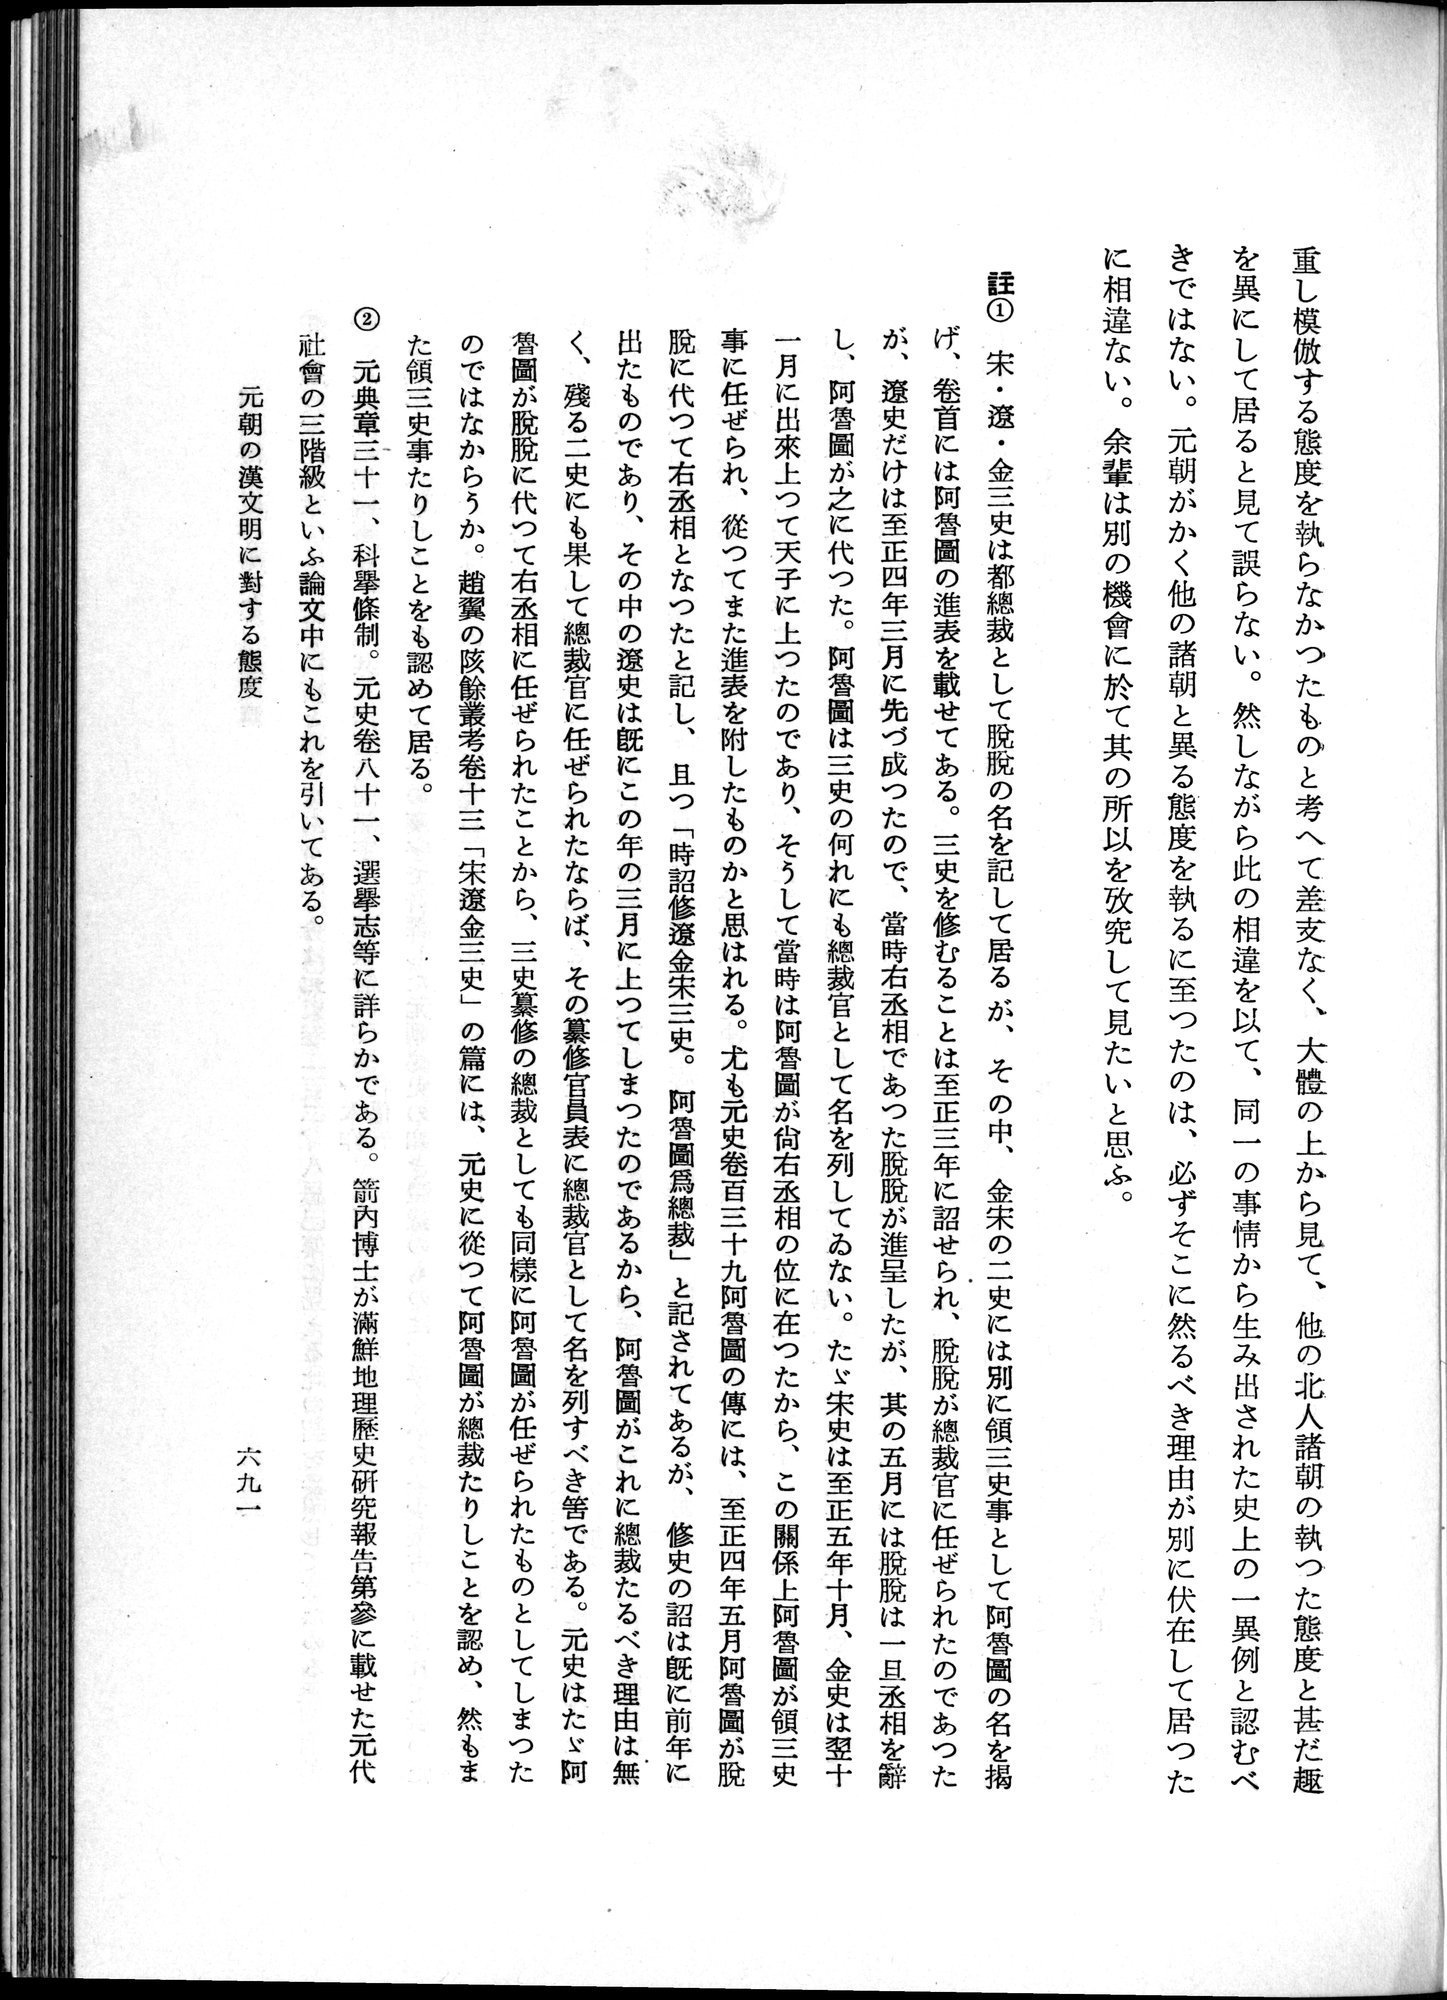 羽田博士史学論文集 : vol.1 / Page 729 (Grayscale High Resolution Image)